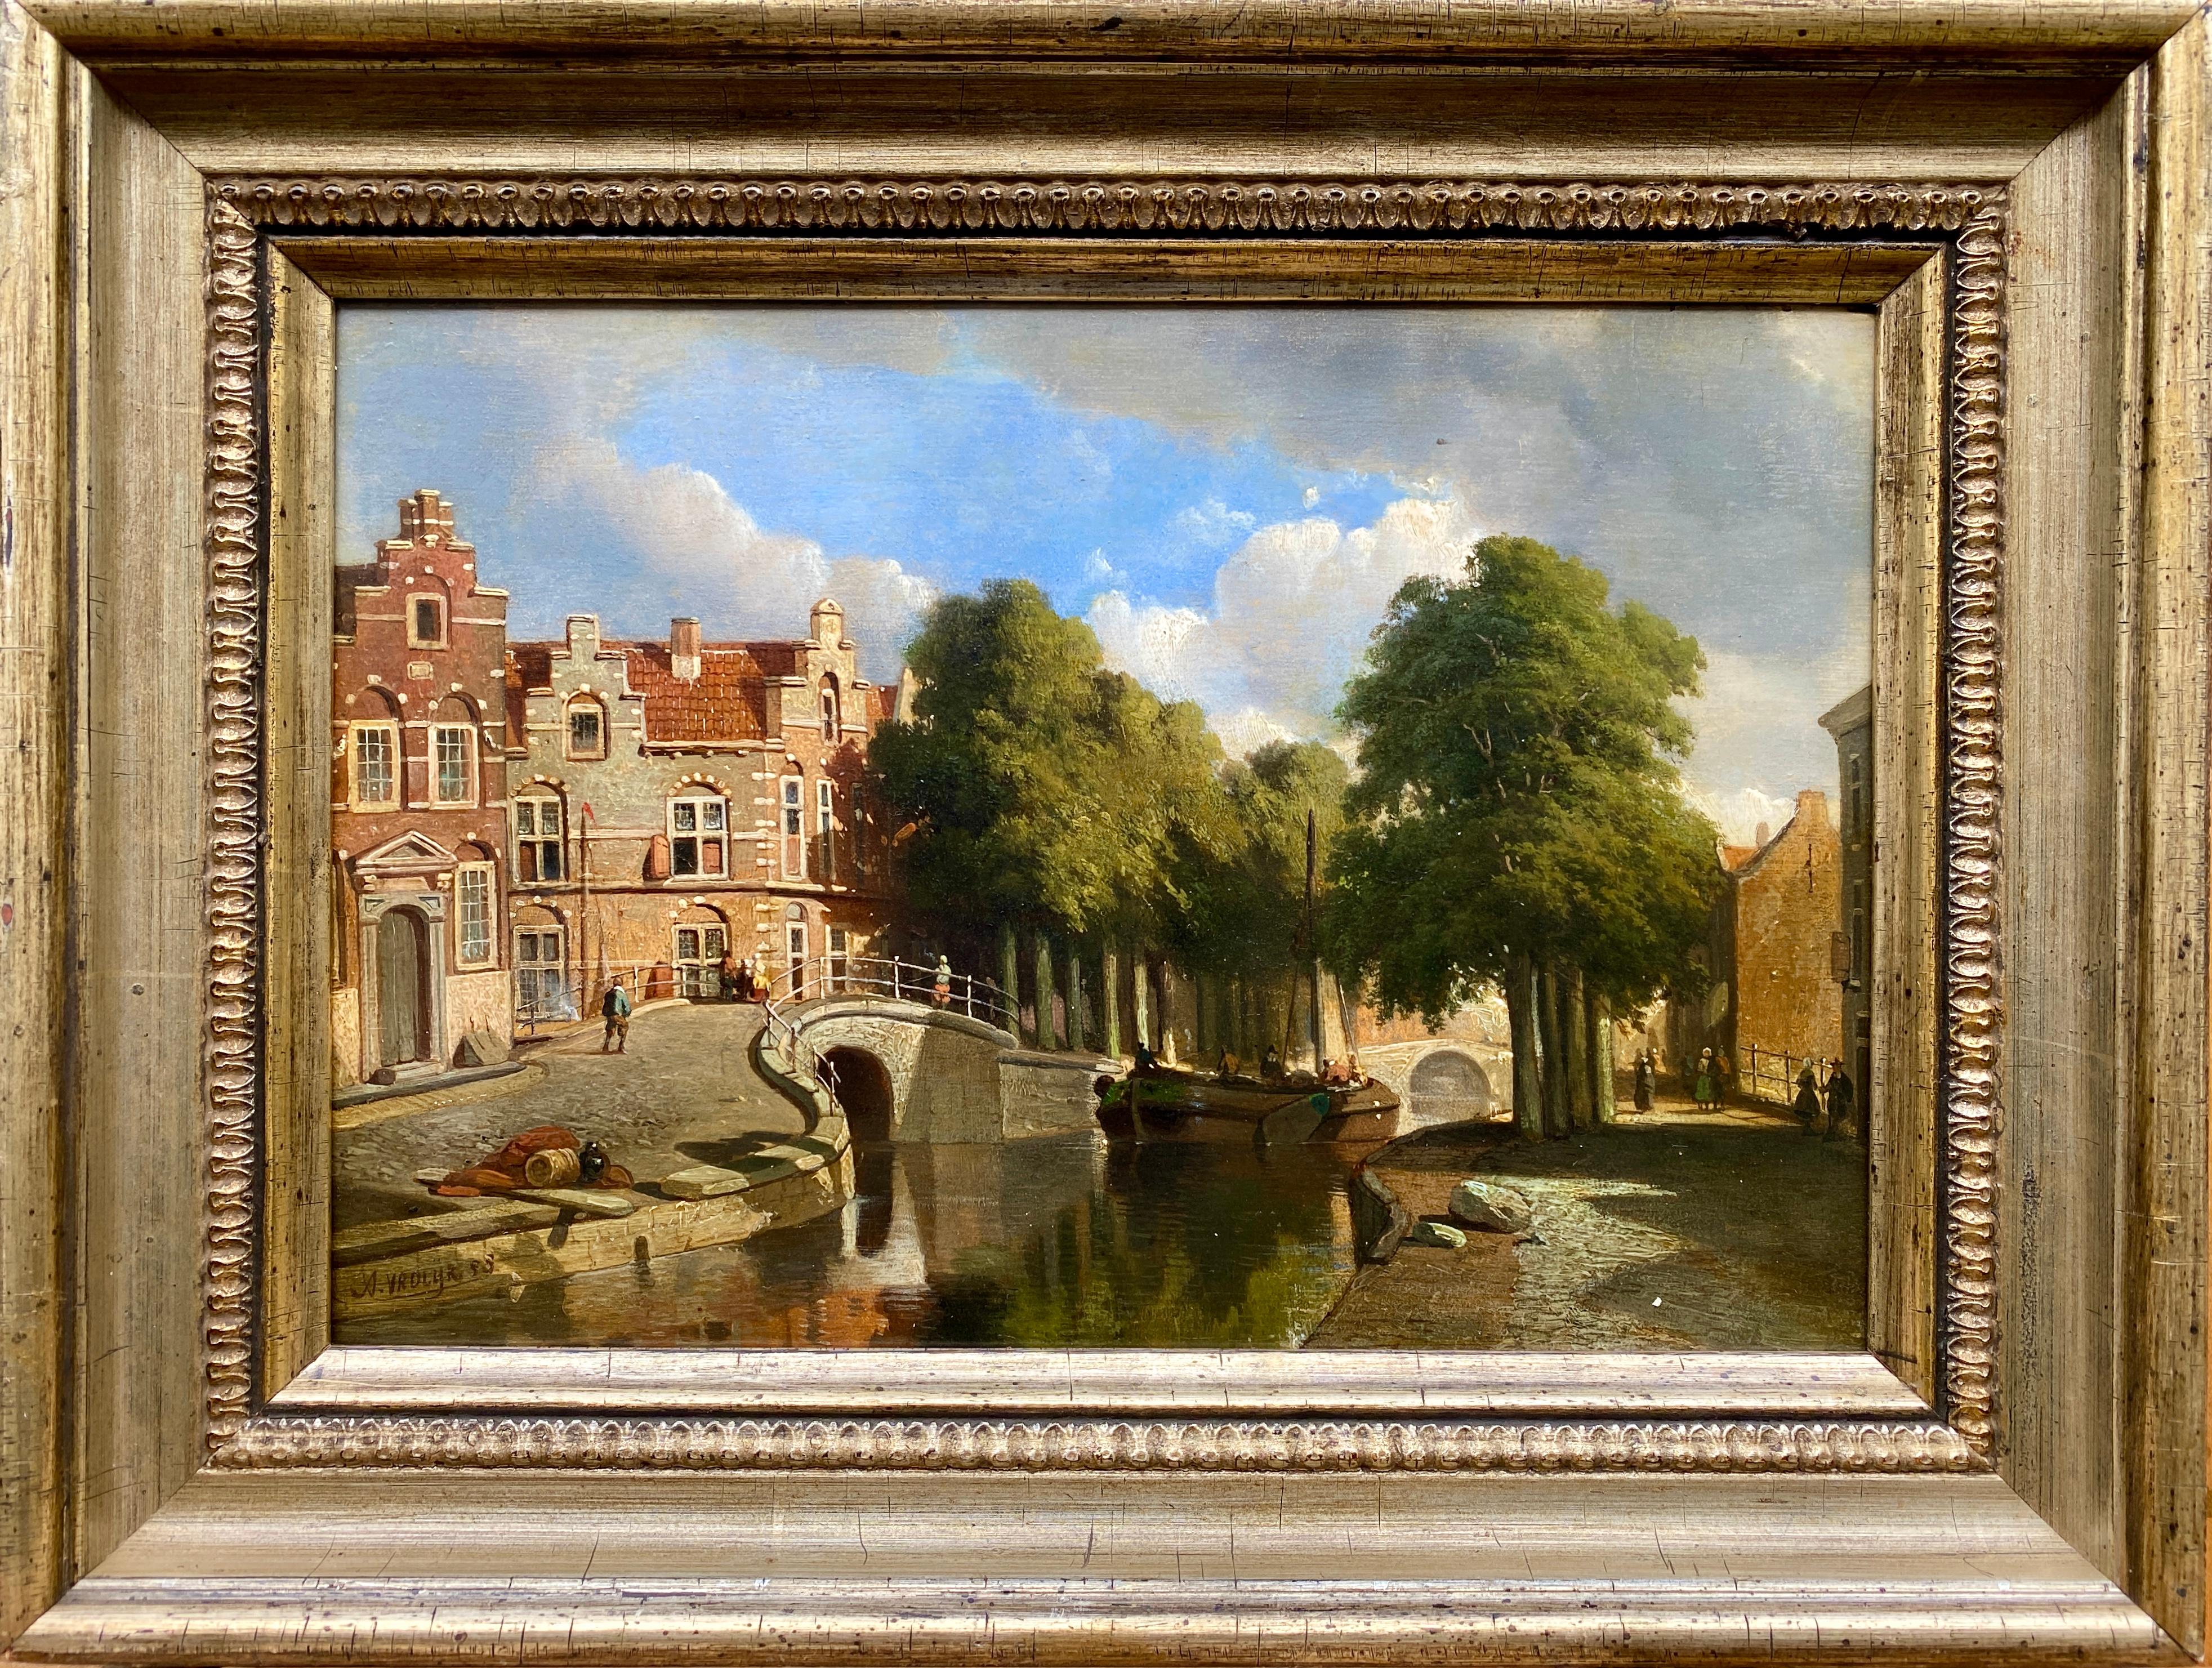 Eine niederländische Stadtansicht, Vrolijk Jacobus Adrianus, Den Haag 1834 - 1862, niederländischer Maler